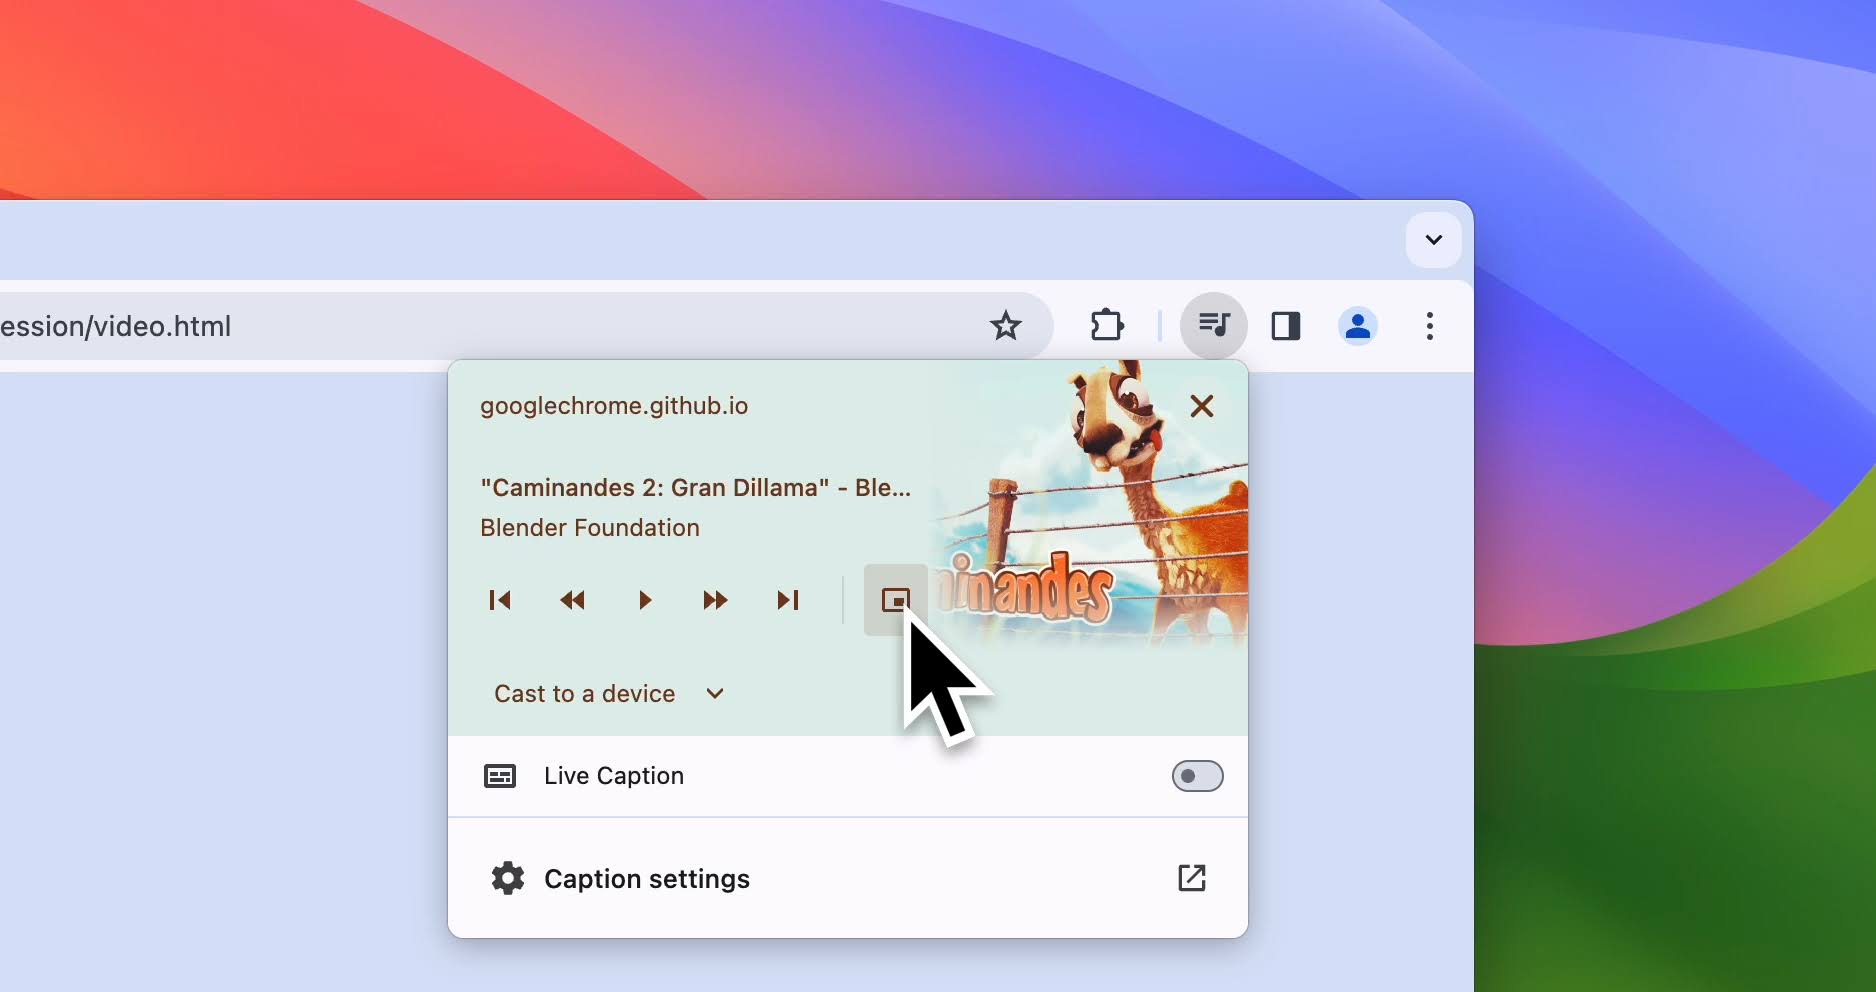 Captura de tela do controle de mídia no navegador Chrome, com o cursor no controle de usuário picture-in-picture.